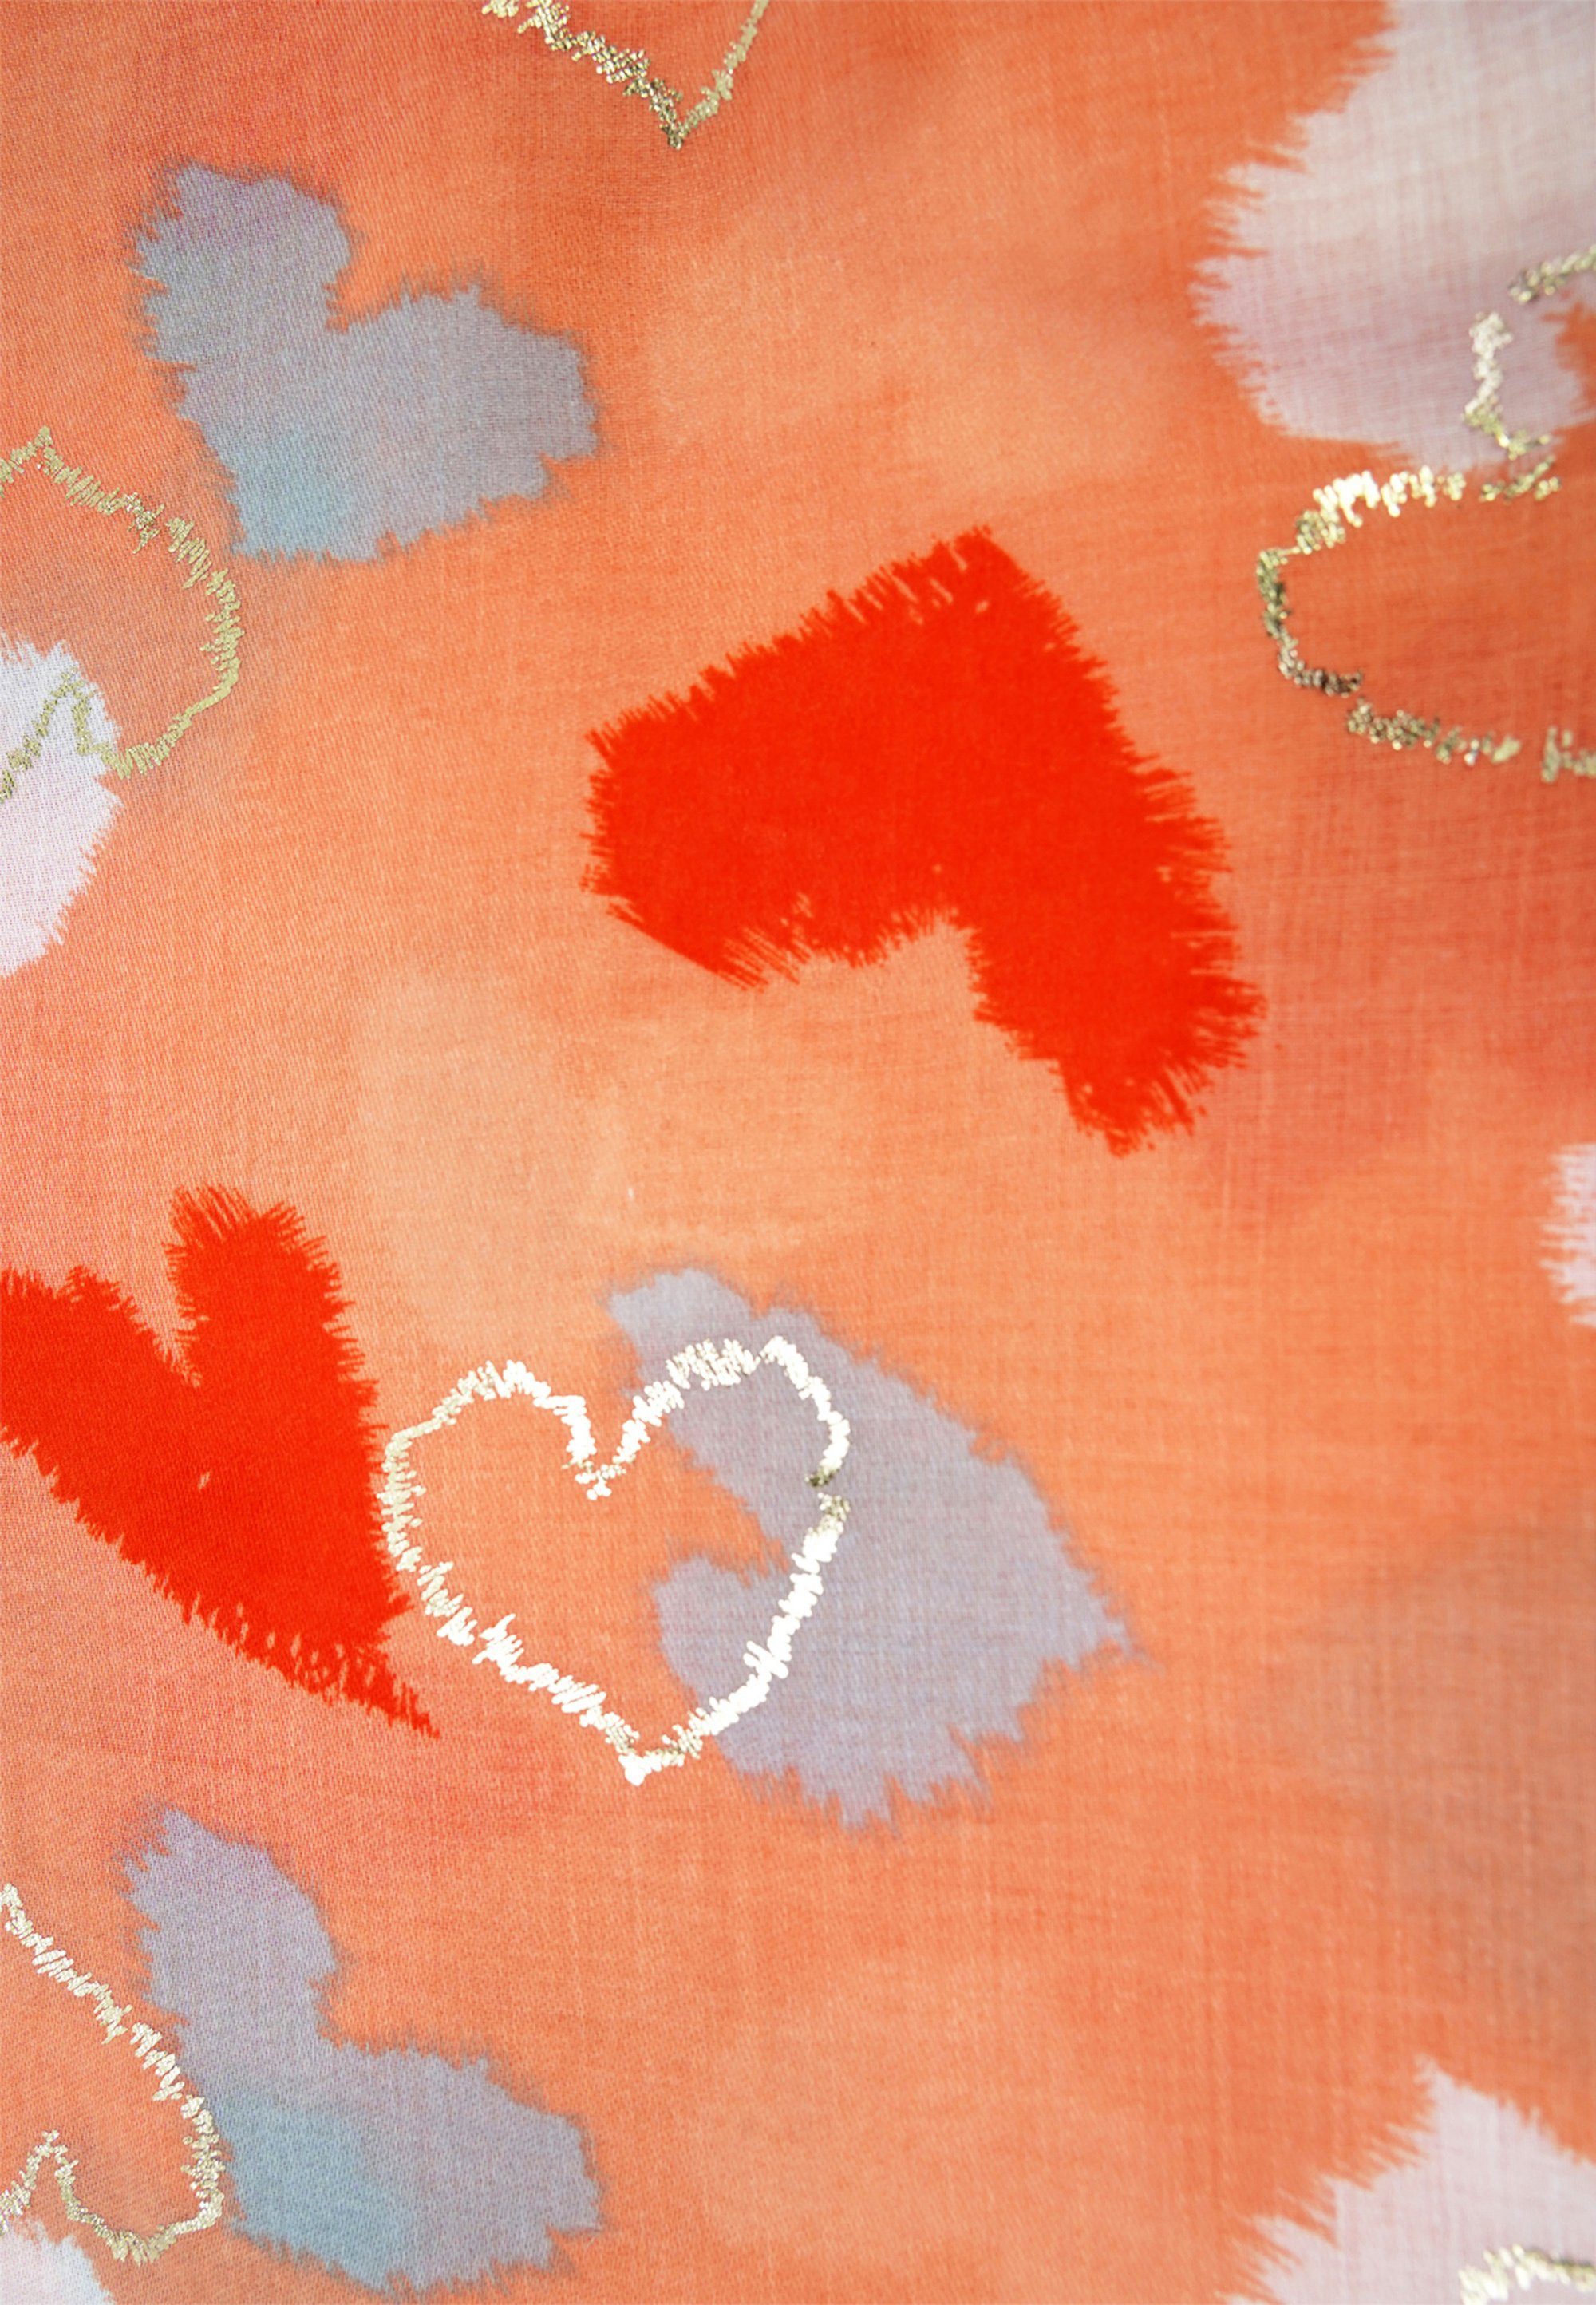 URA, Modeschal orange schönem Herzen-Print mit Harpa